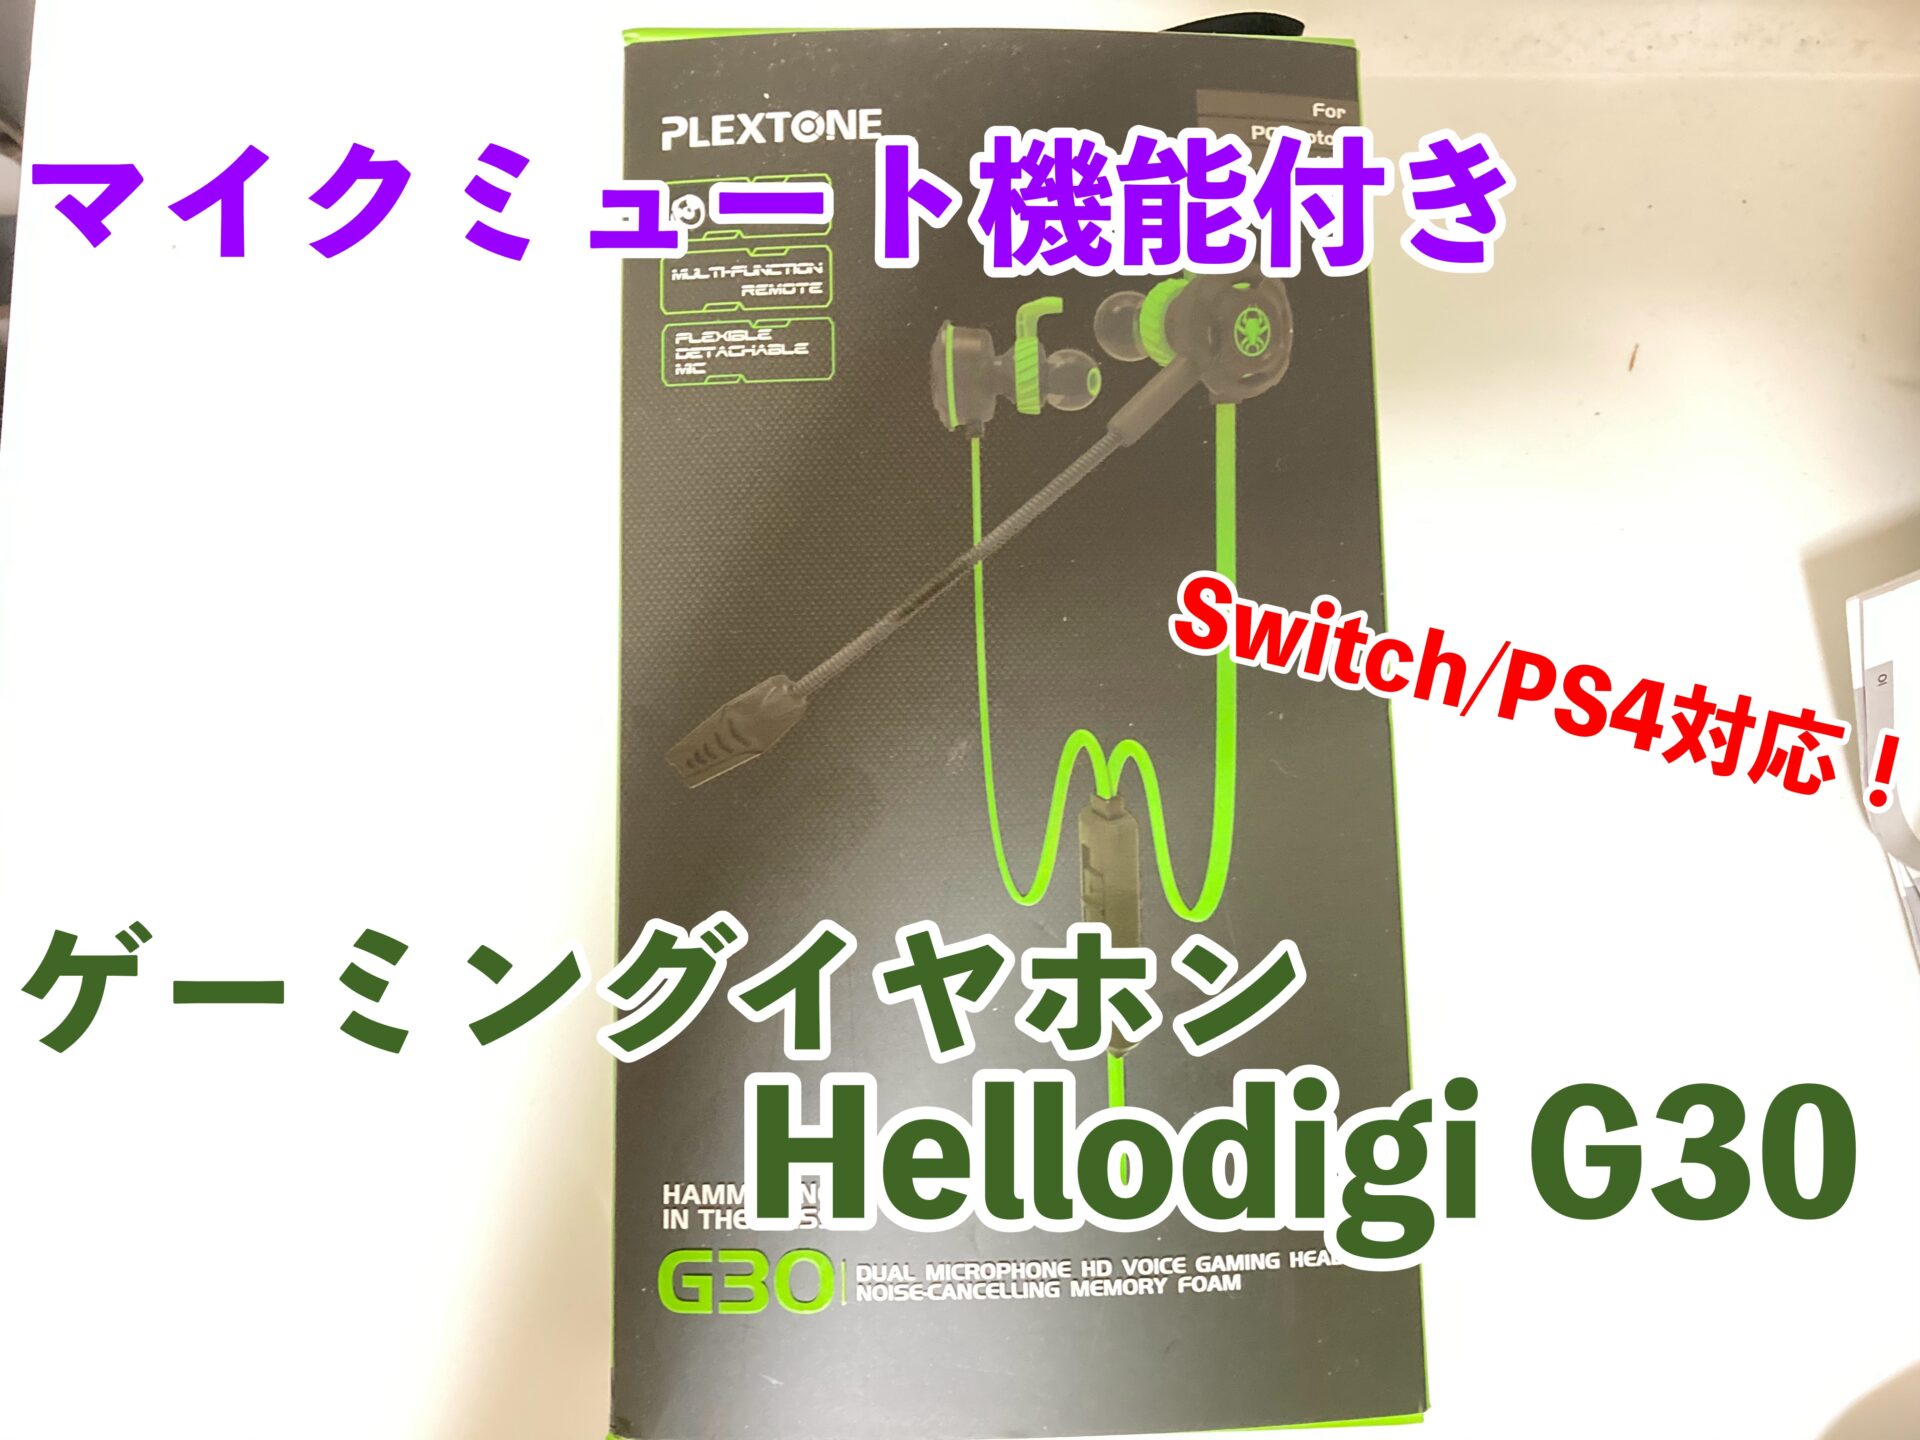 メガネユーザー必見 着脱式マイク付きゲーミングイヤホン Hellodigi G30 レビュー Switch Ps4対応 テクに狩る